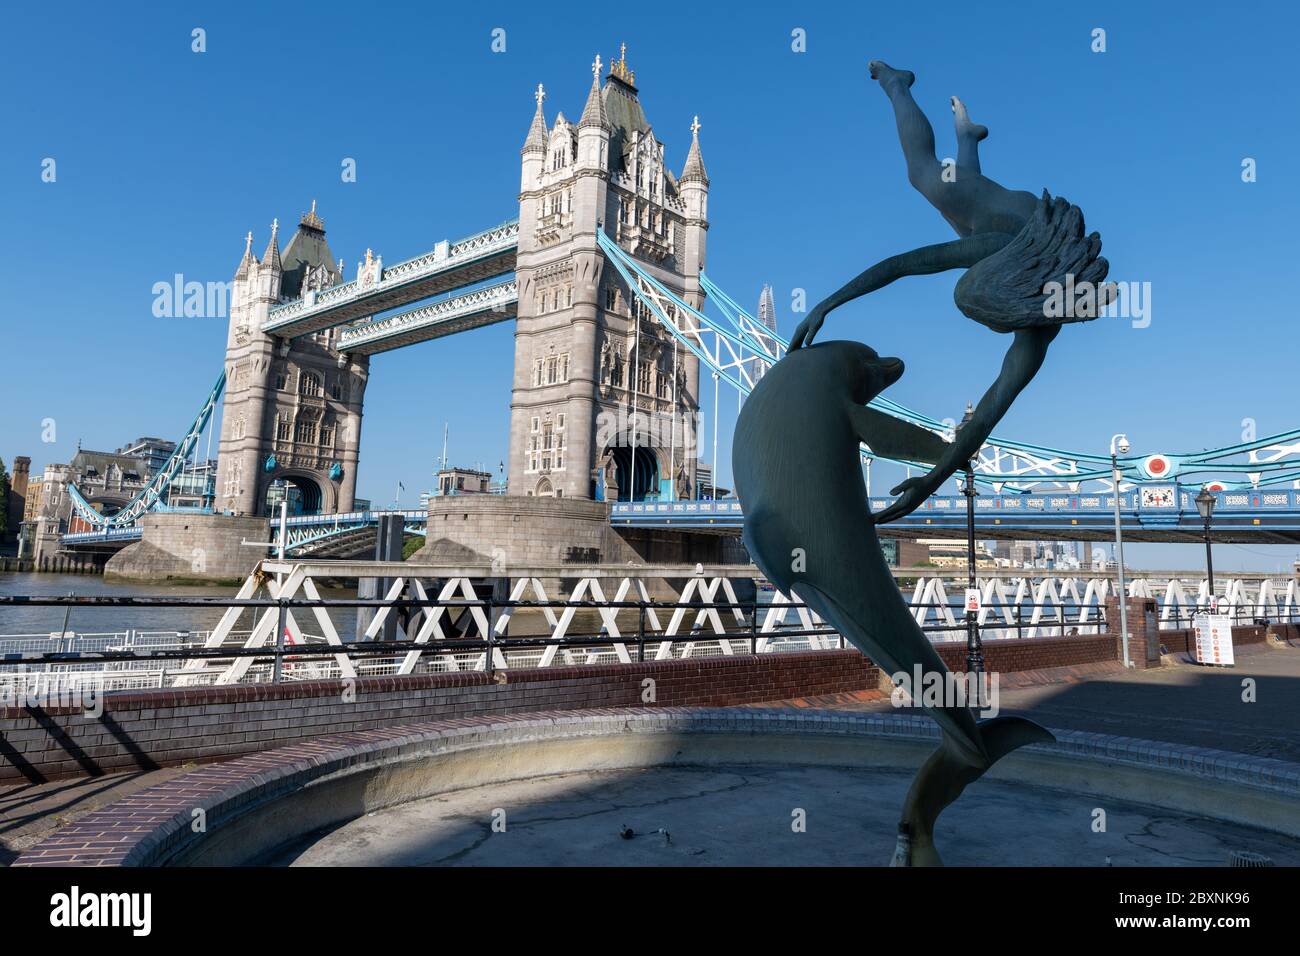 La fille avec un dauphin sur la rive nord de la Tamise avec une vue sur Tower Bridge lors d'une belle journée ensoleillée de printemps à Londres. ROYAUME-UNI. Banque D'Images